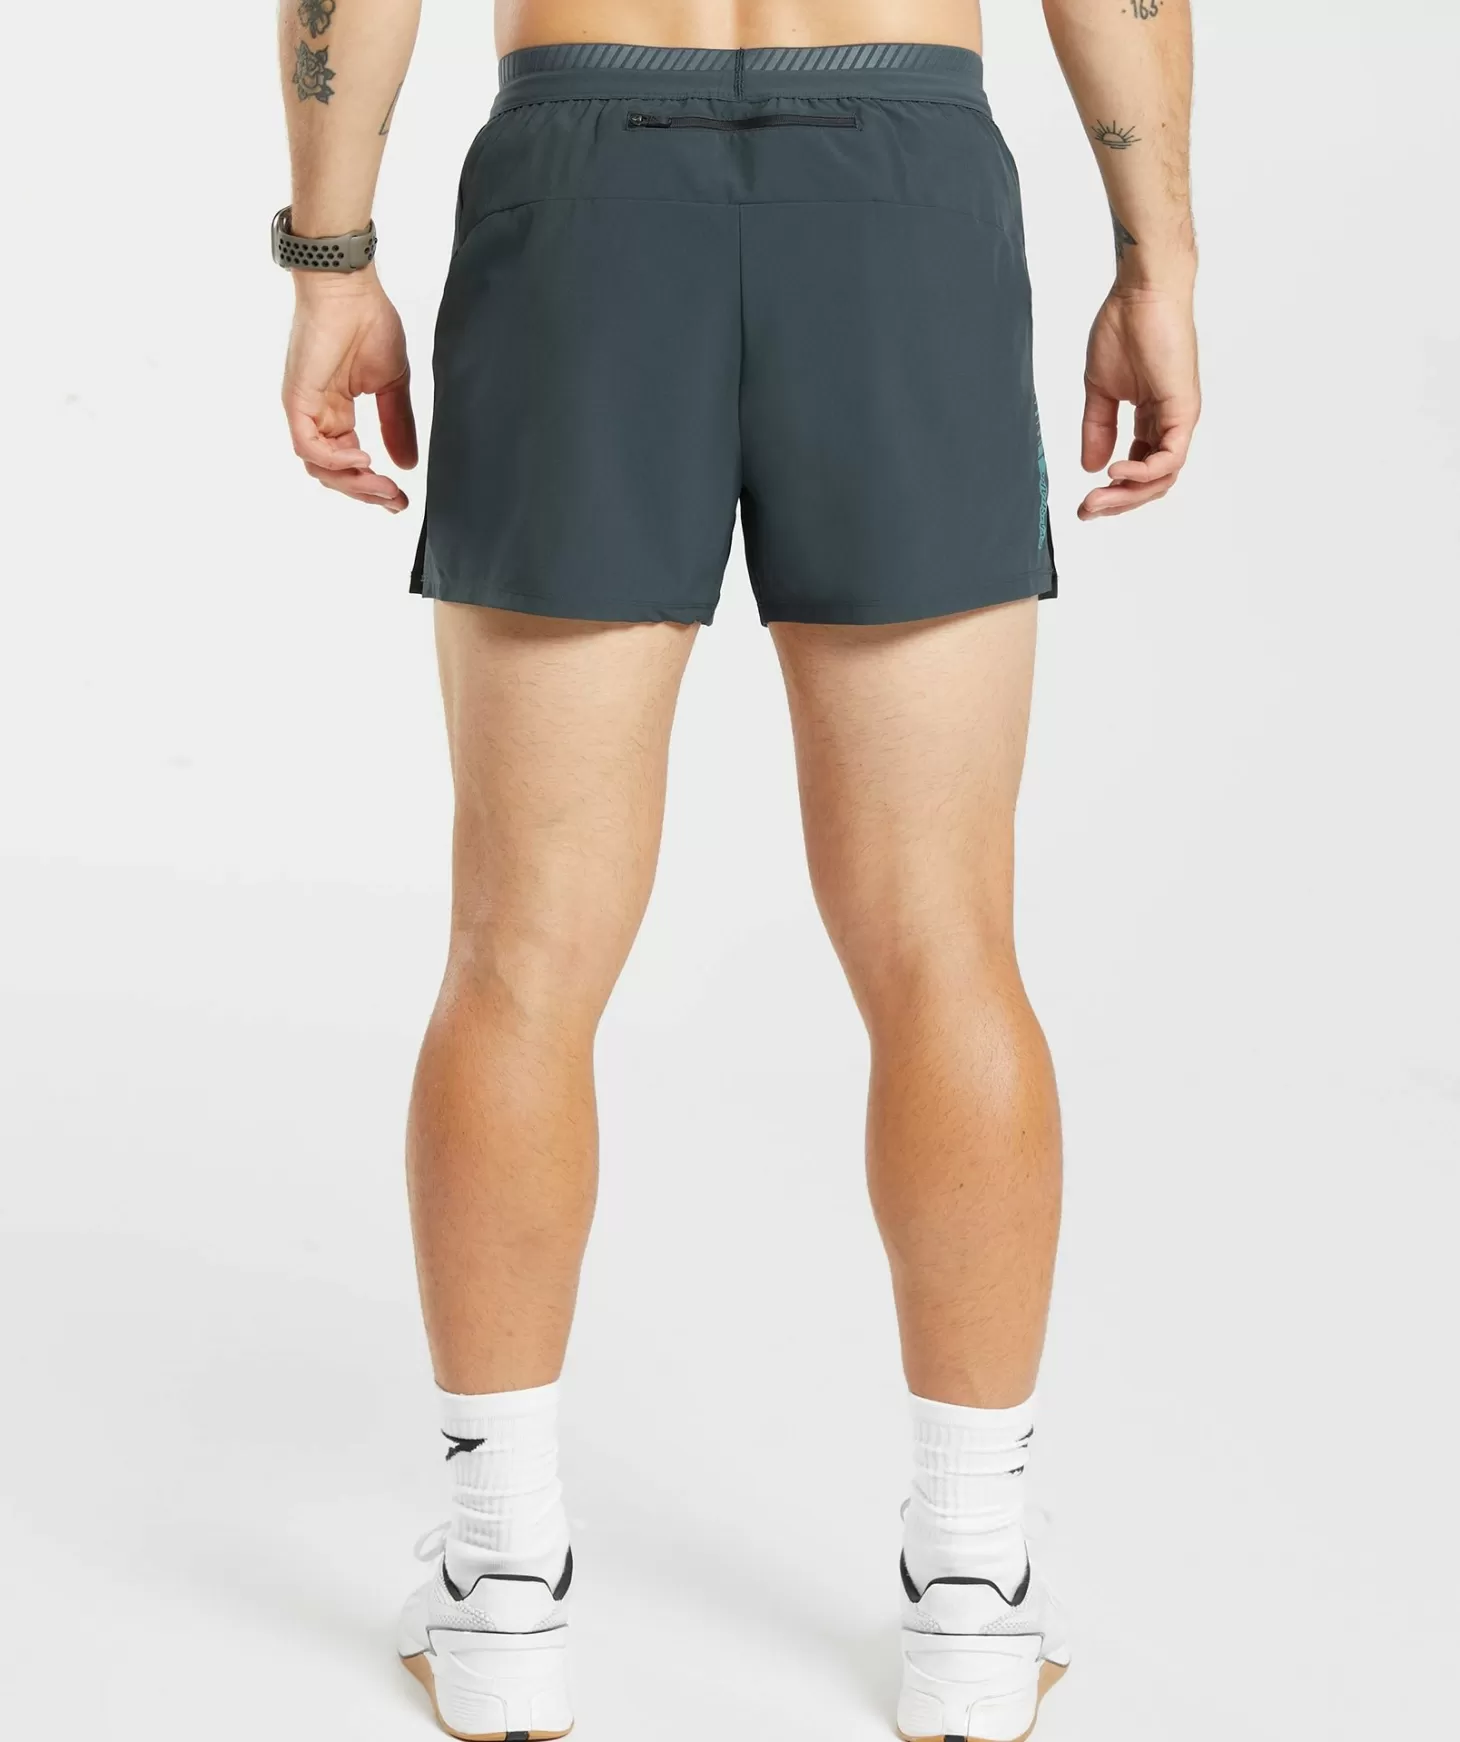 Gymshark Apex Run 4" Shorts